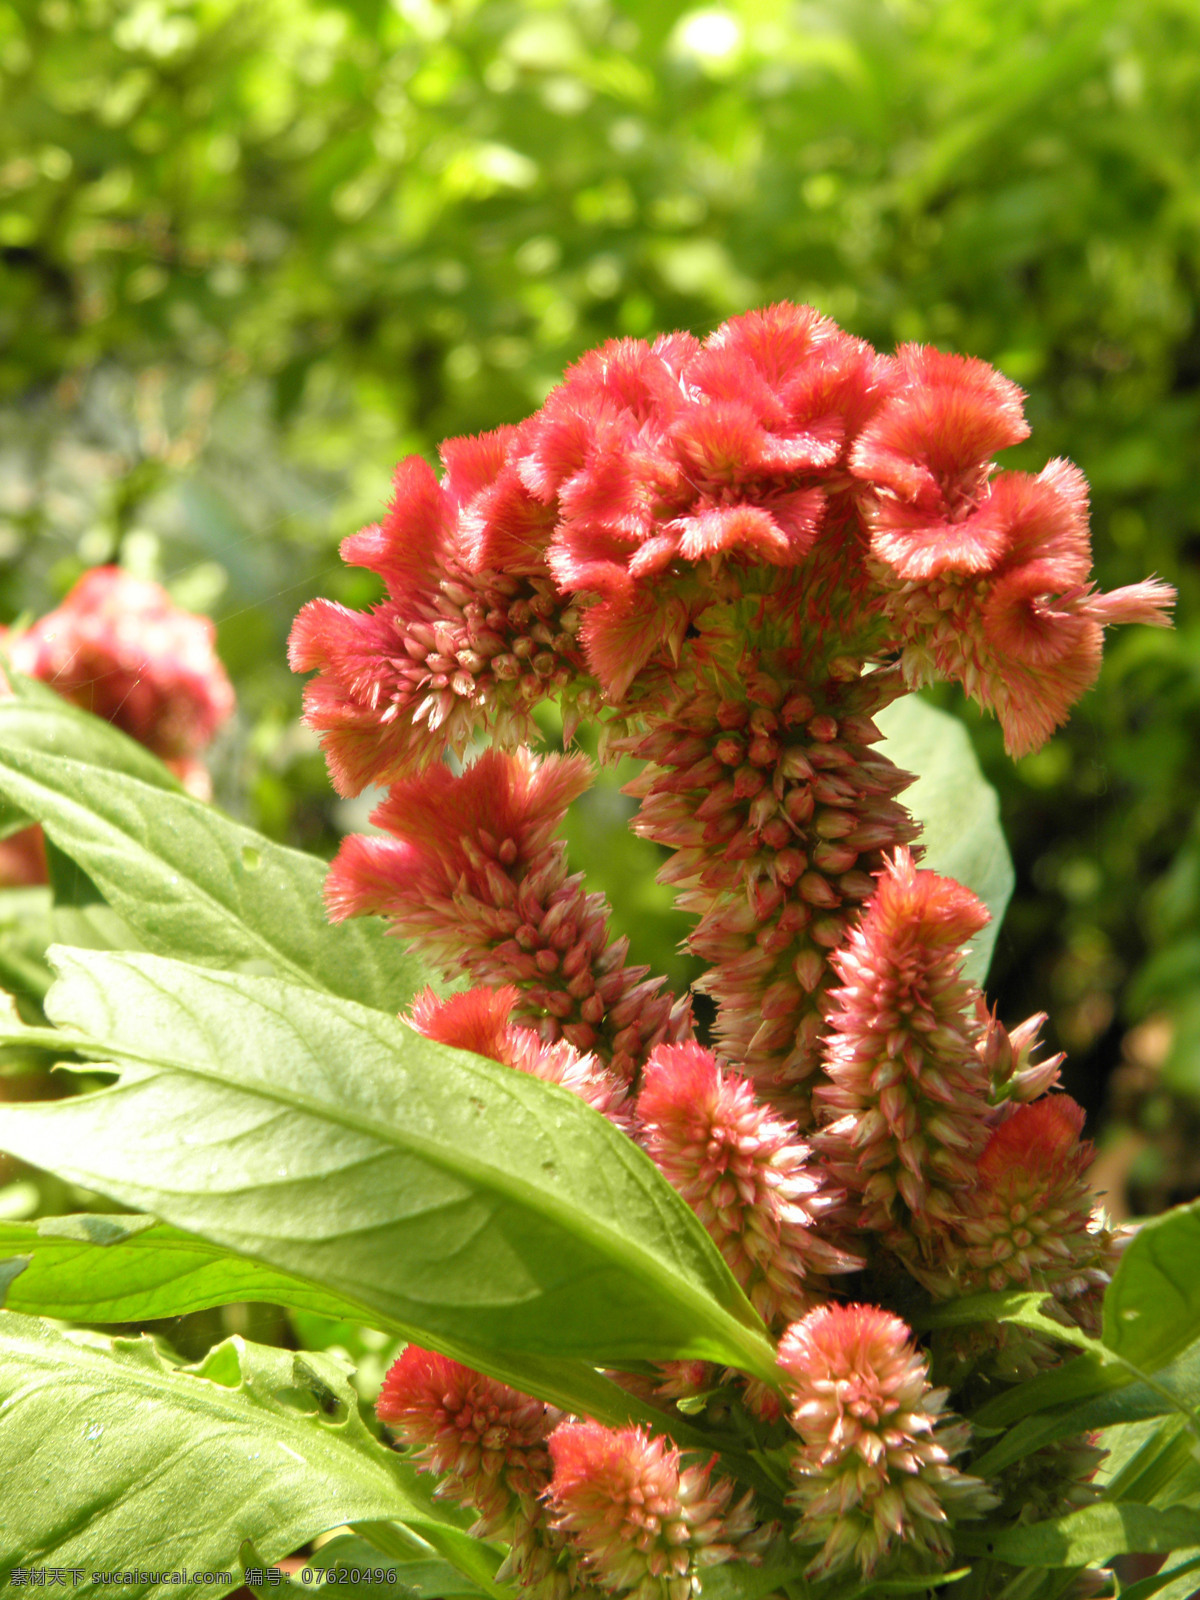 鸡冠花 花卉 红色鸡冠花 绿色植物 植物摄影 自然风景 花卉摄影 自然 植物世界 花草 生物世界